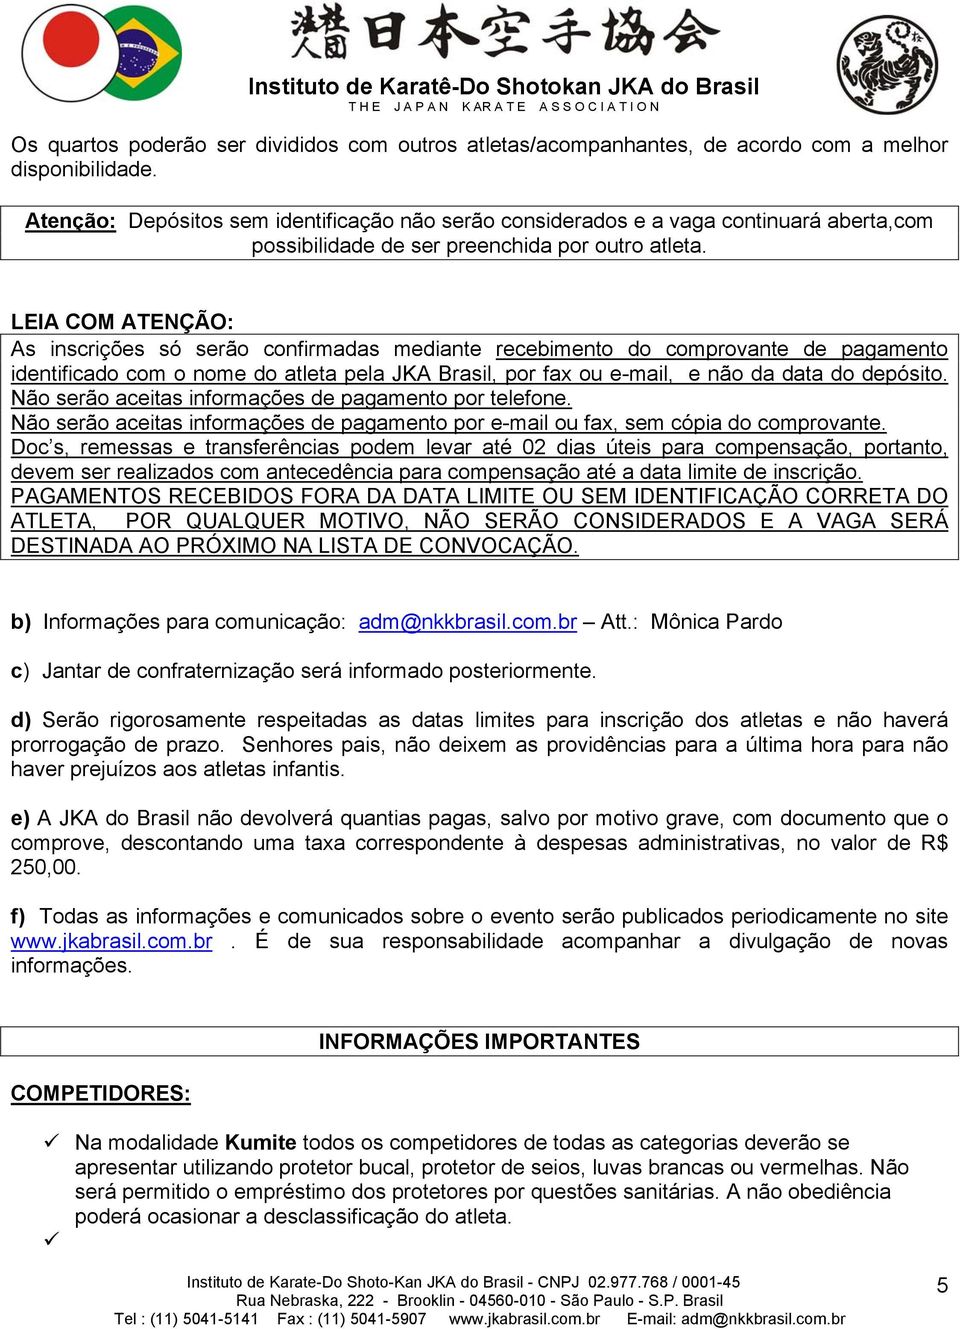 LEIA COM ATENÇÃO: As inscrições só serão confirmadas mediante recebimento do comprovante de pagamento identificado com o nome do atleta pela JKA Brasil, por fax ou e-mail, e não da data do depósito.